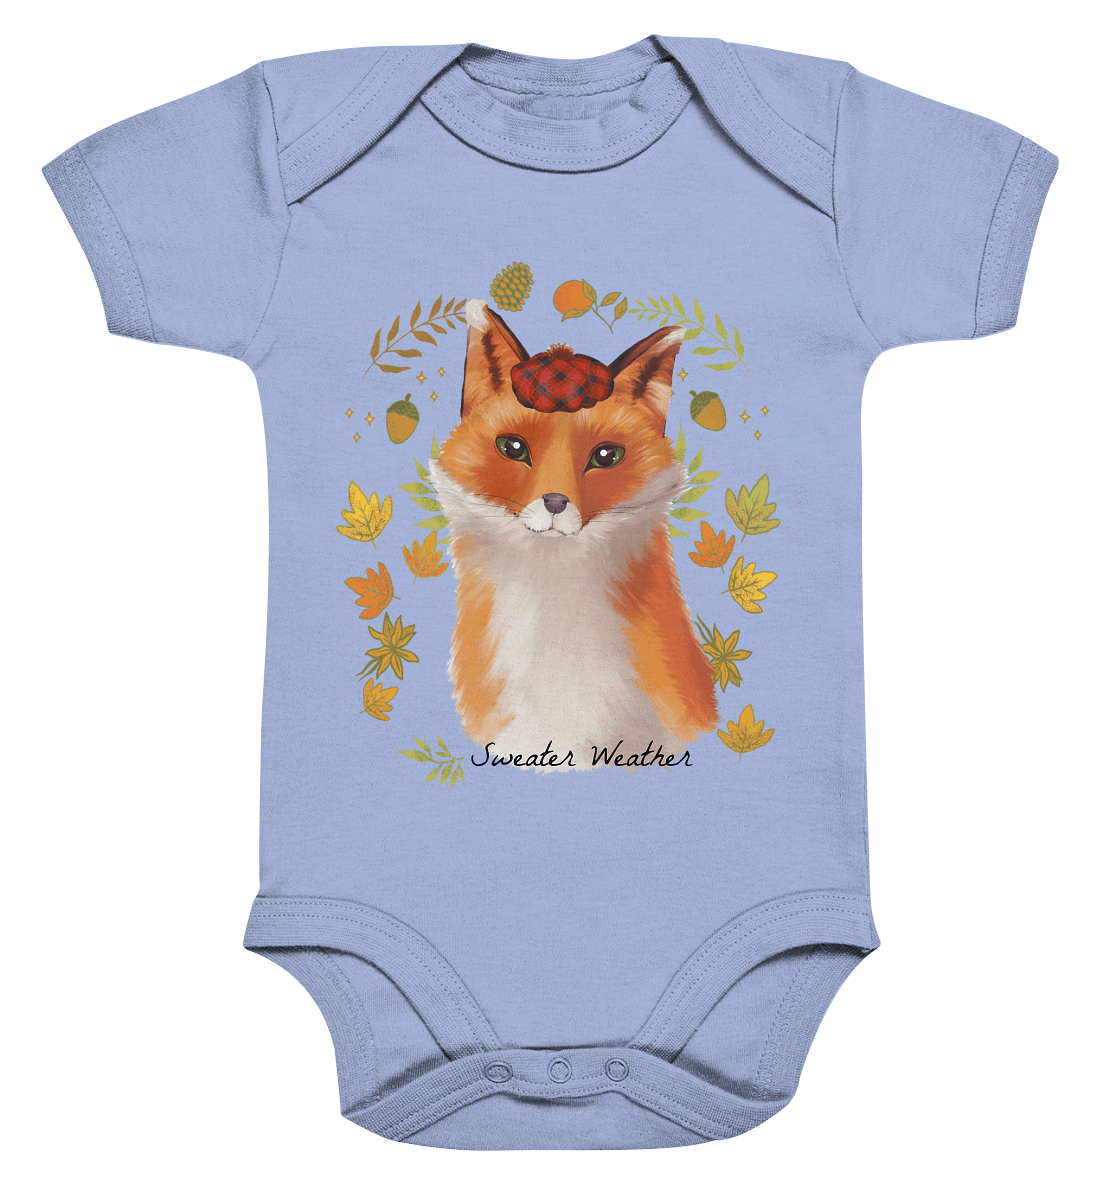 Fuchs im Herbst Baby Strampler mit kleinem Fuchs im Herbst Sweater Weather BLOOMINIC